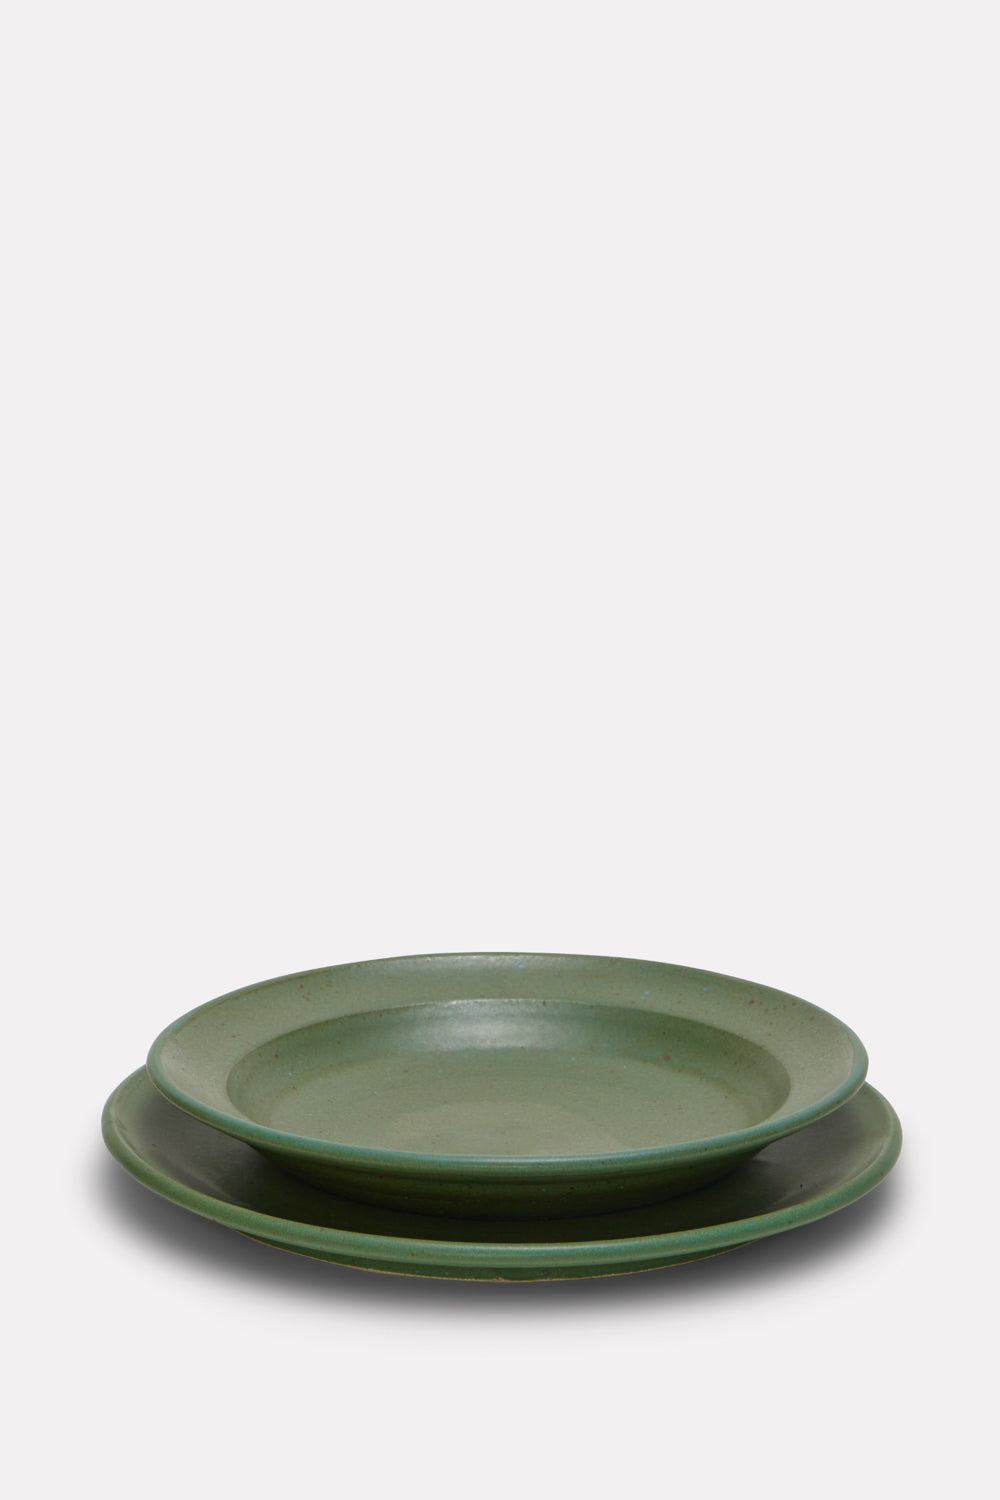 Hand-Thrown Ceramic Bowls (set of four)